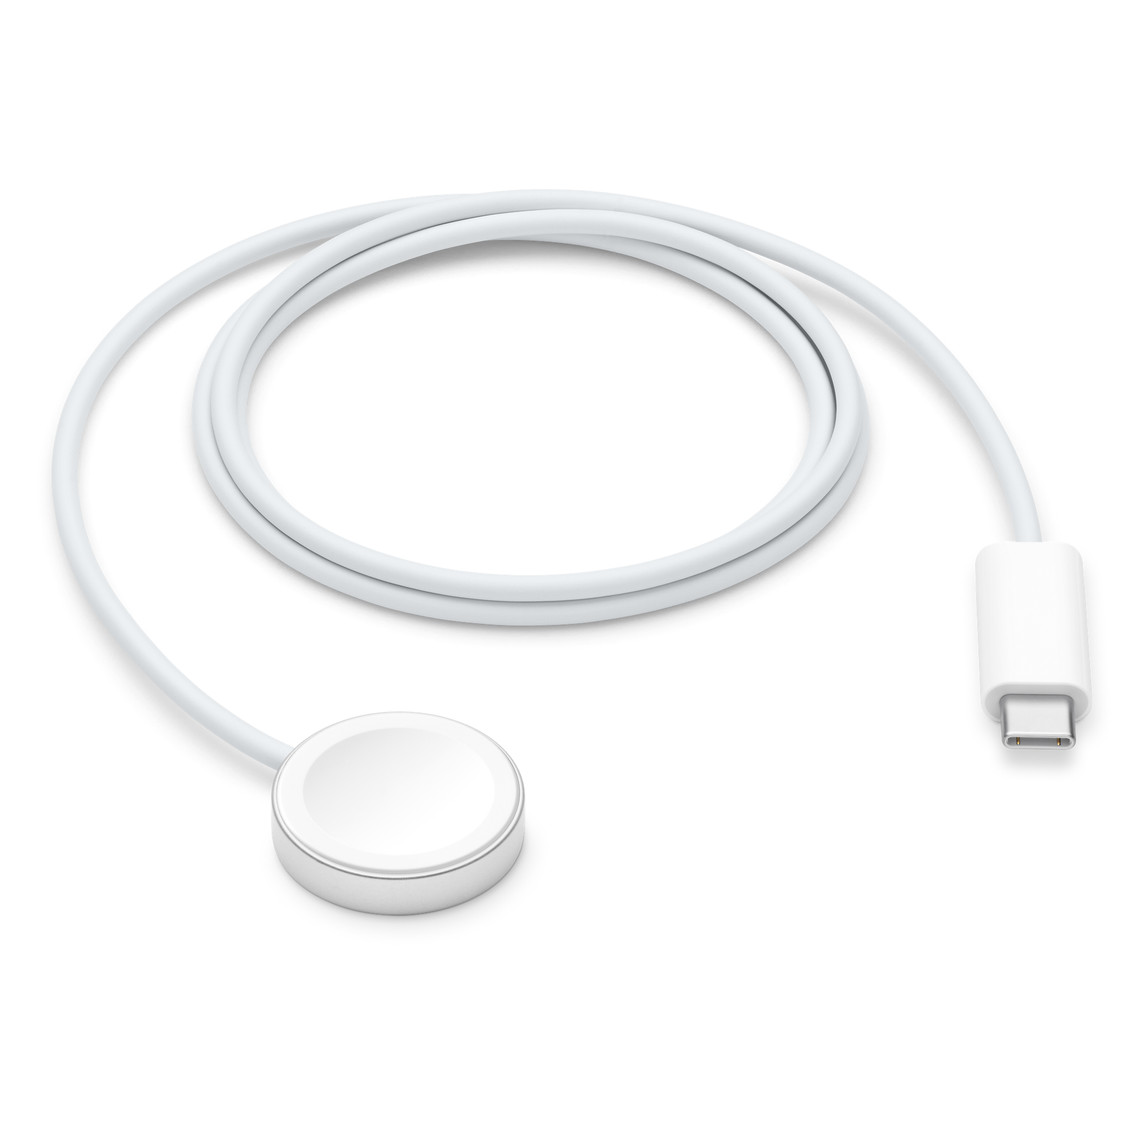 Cáp Sạc Apple Watch Magnetic Fast Charger to USB-C Cable (0.3 m) - Chính hãng